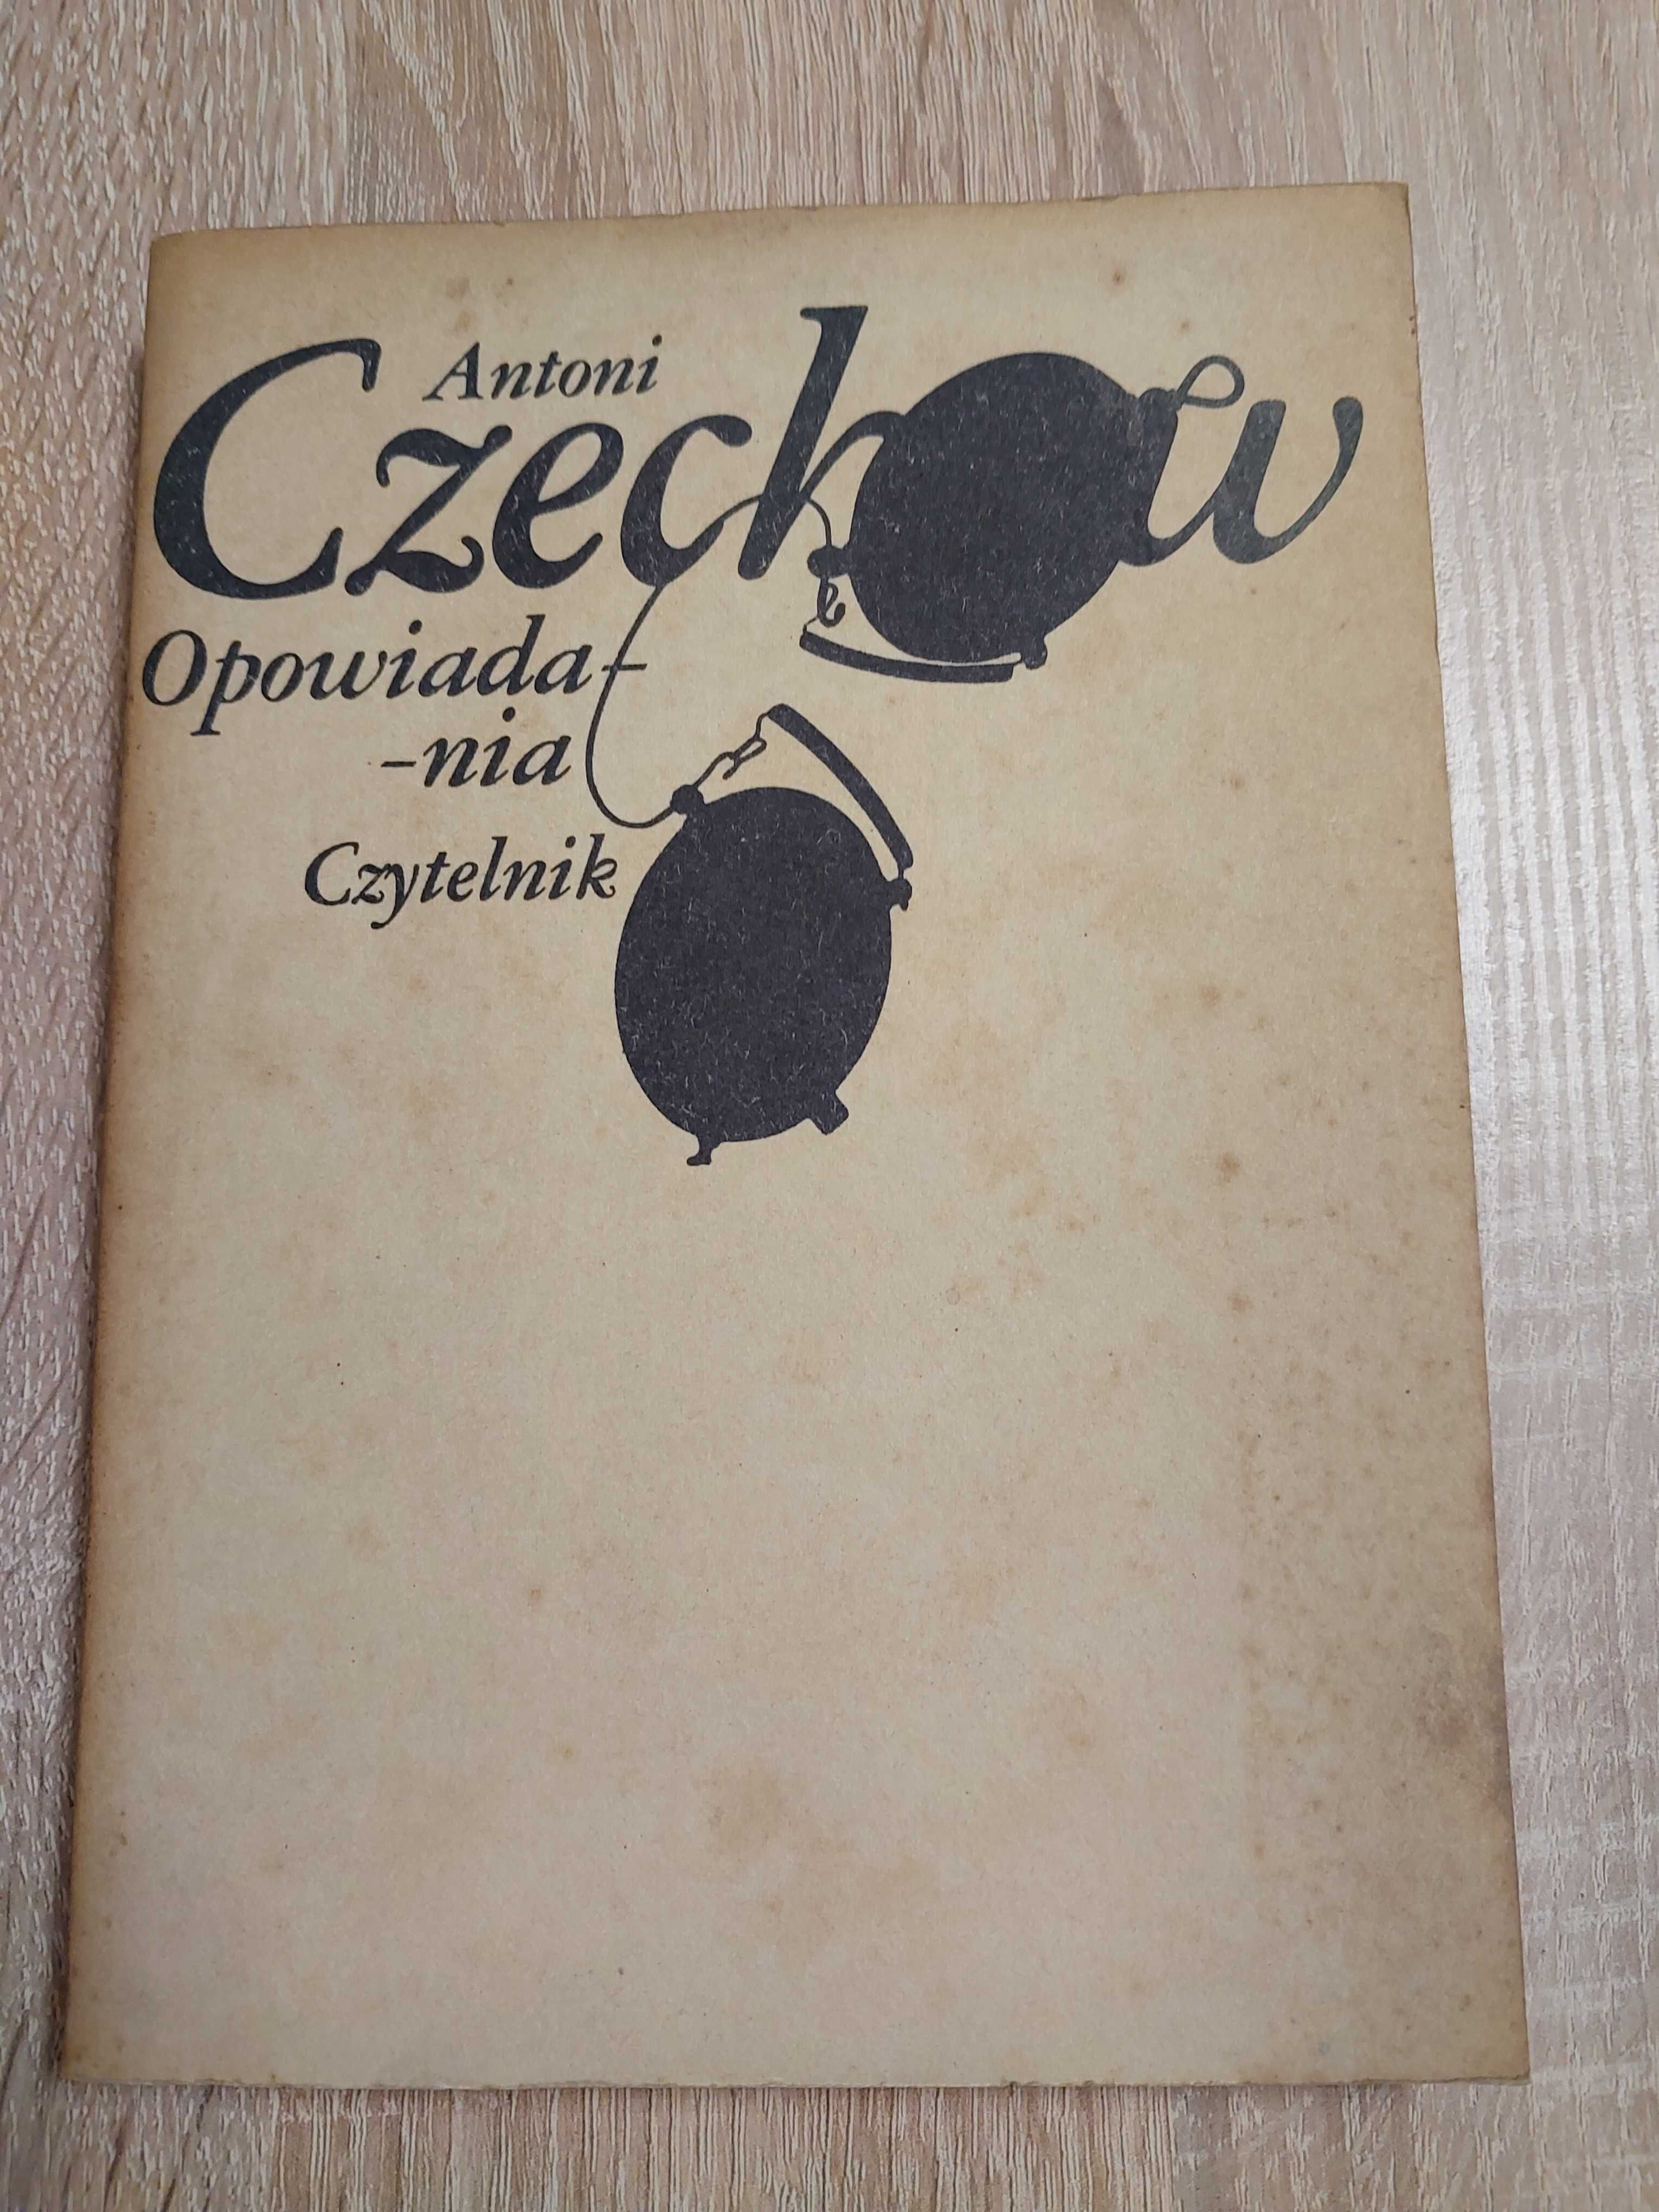 Czechow Opowiadania